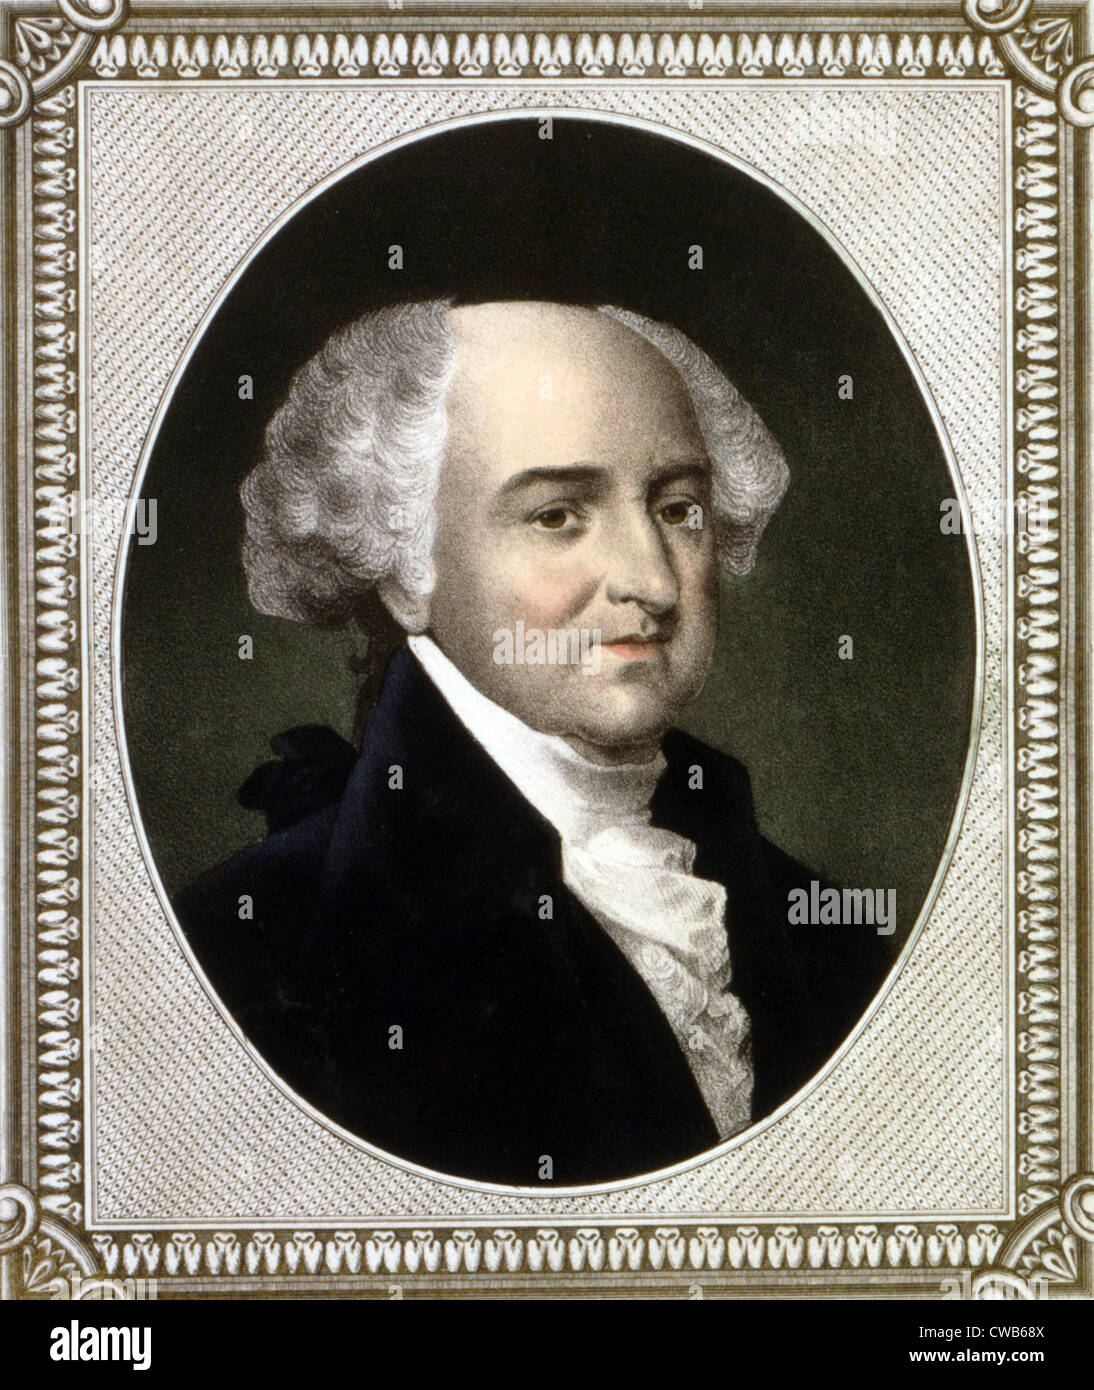 John Adams, deuxième Président des États-Unis, lithographie couleur ca. 1846 Banque D'Images